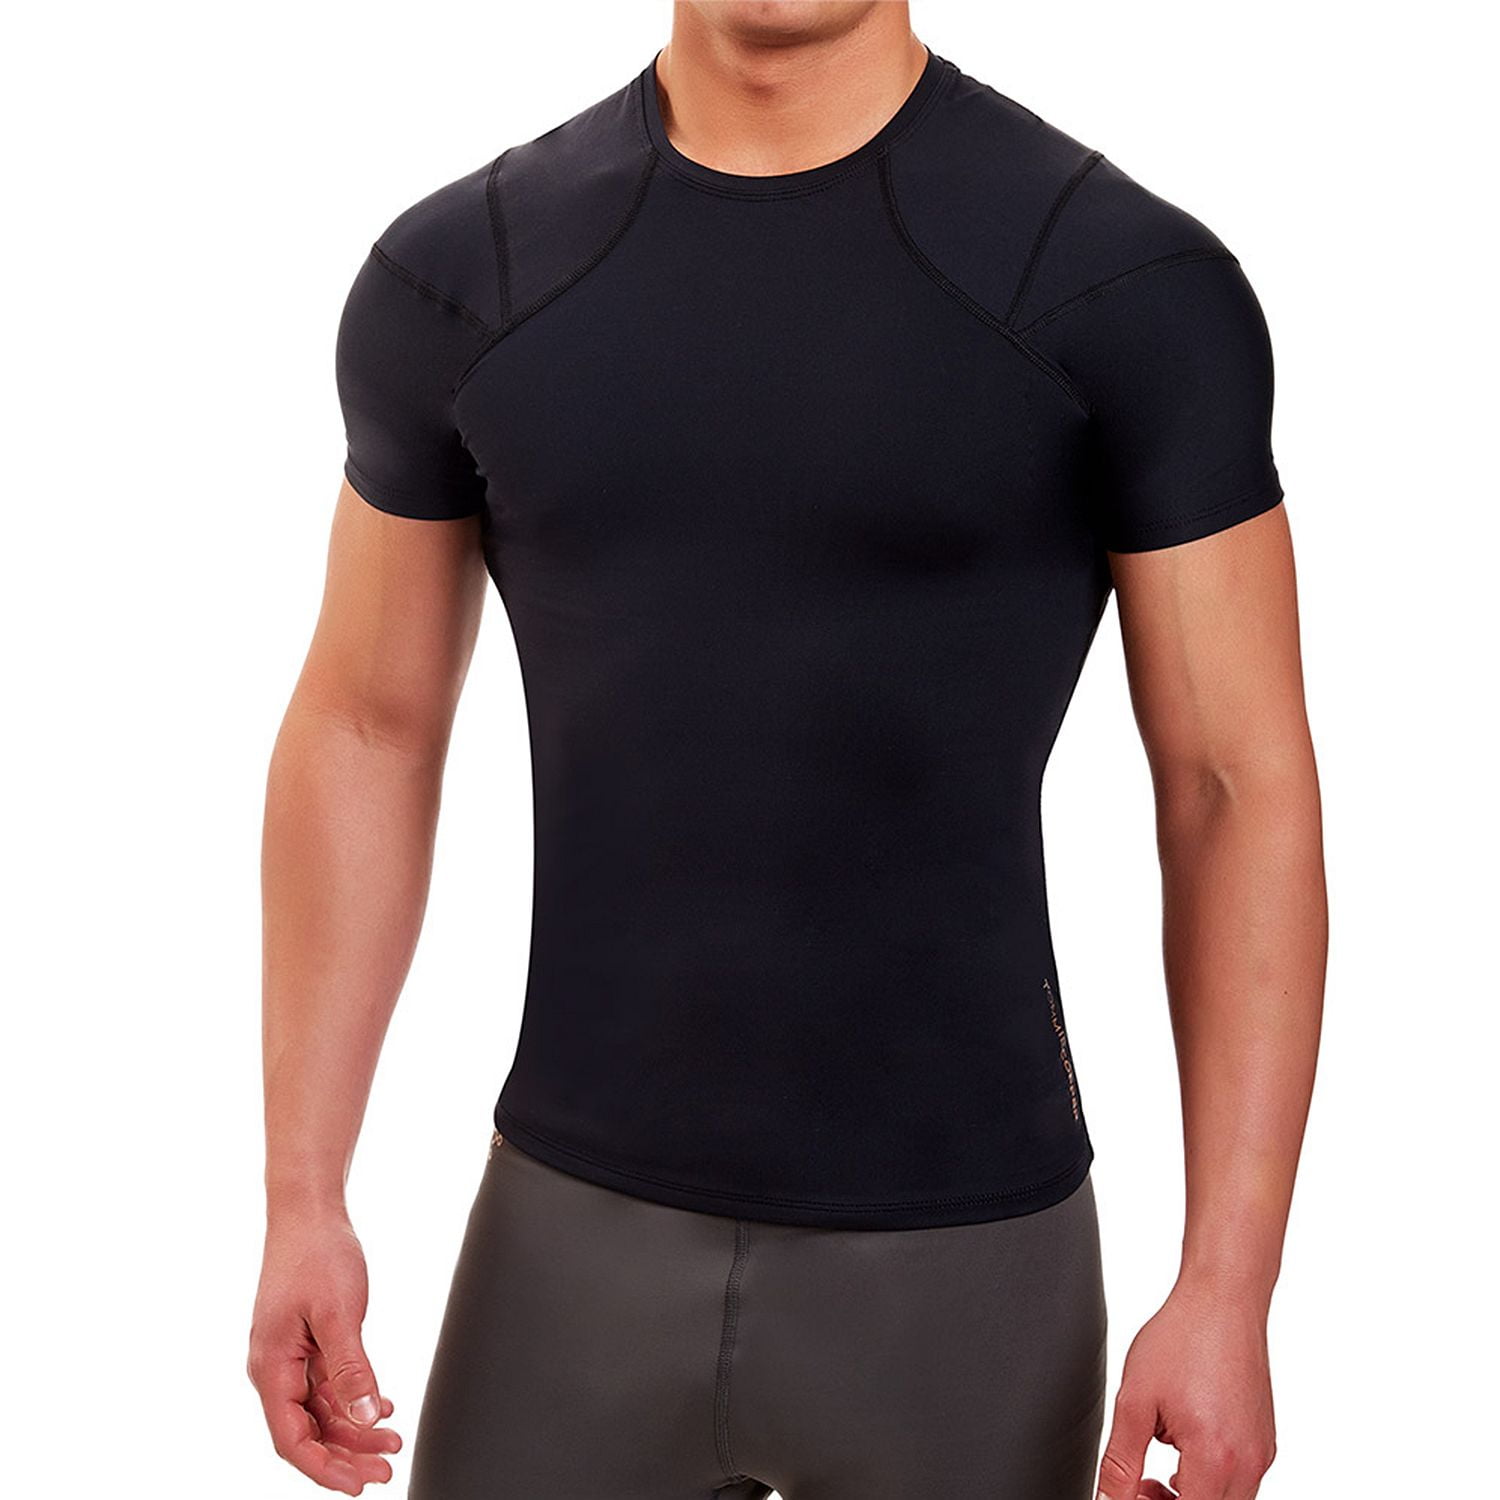 Tommie Copper Shoulder Centric Core Support Shirt Fit - Walmart.com